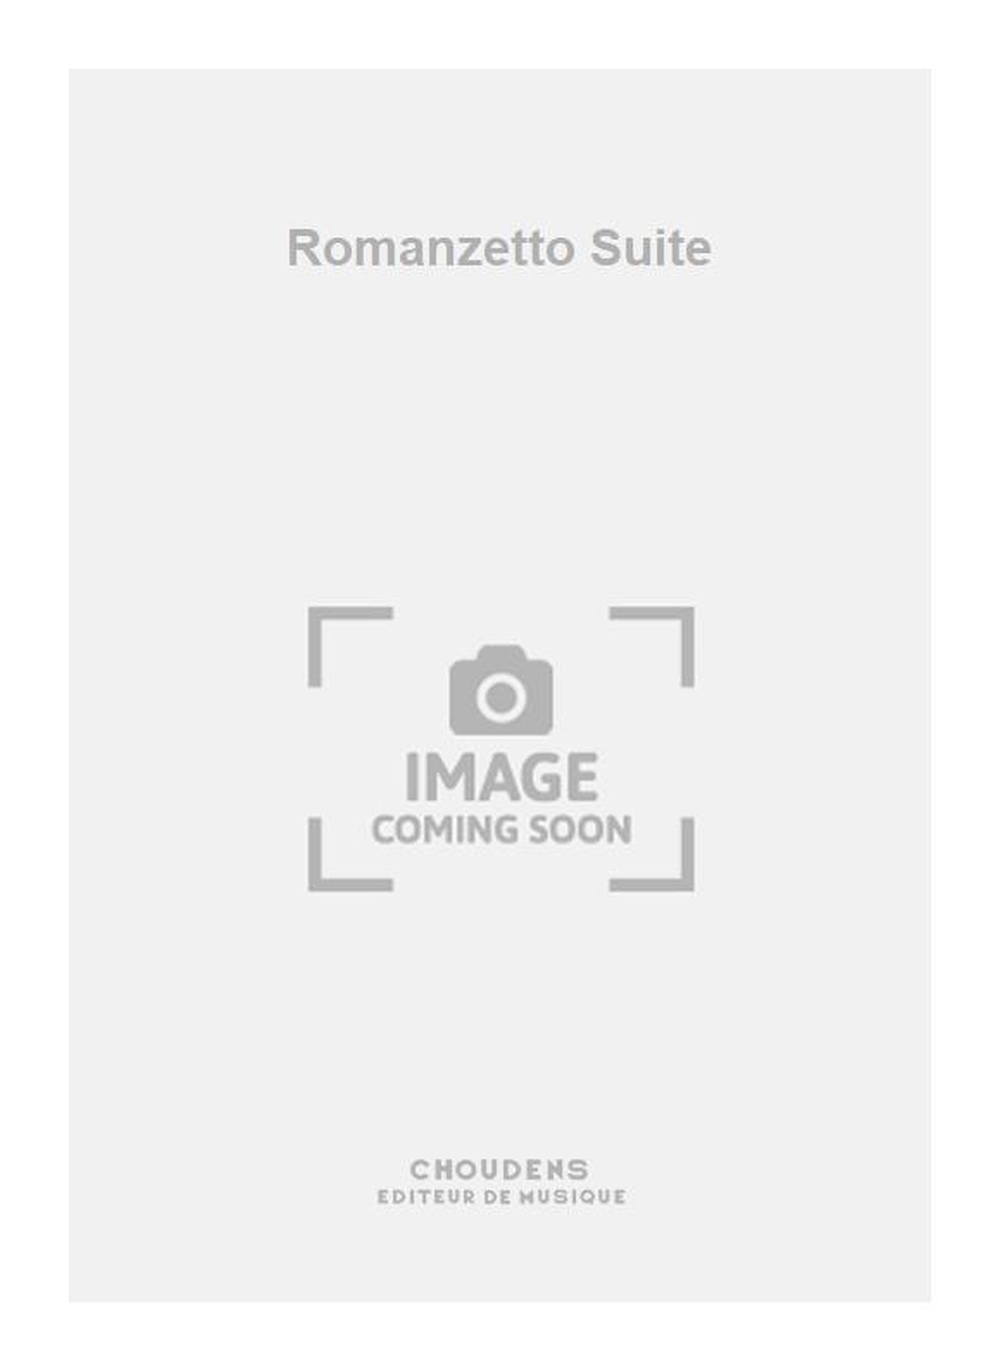 Romanzetto Suite